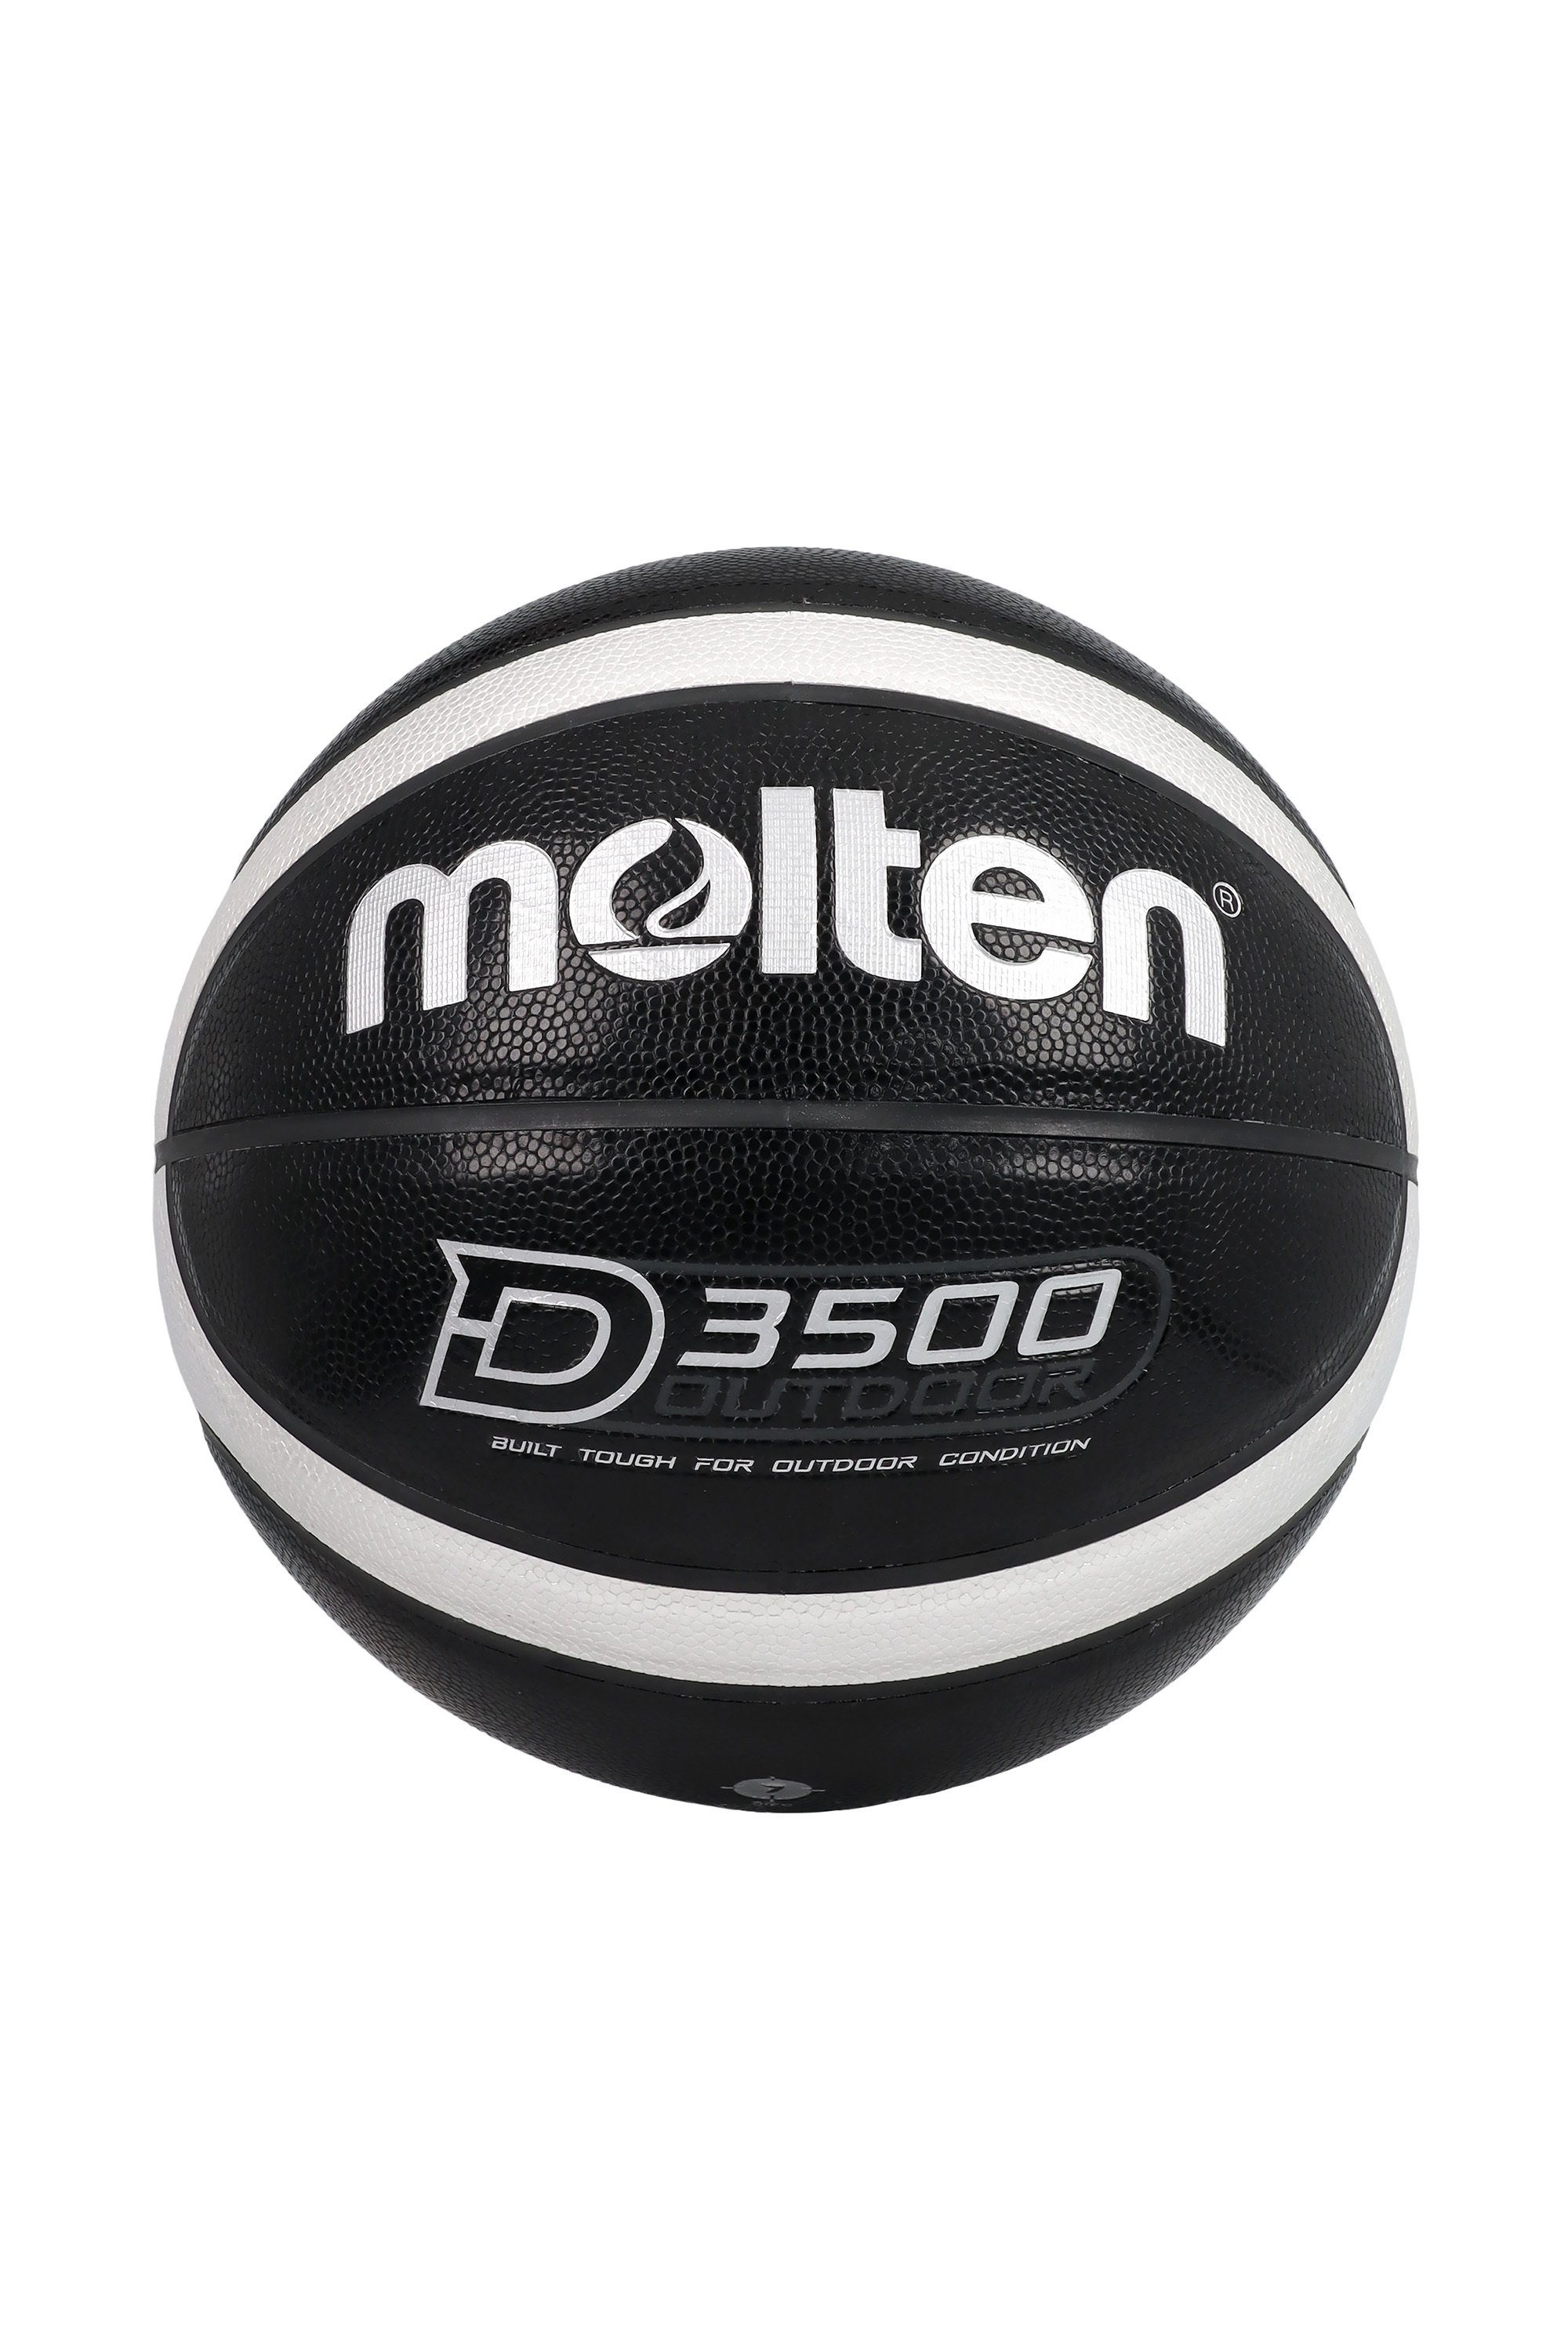 Molten 7 Größe Basketball B7D3500-KS